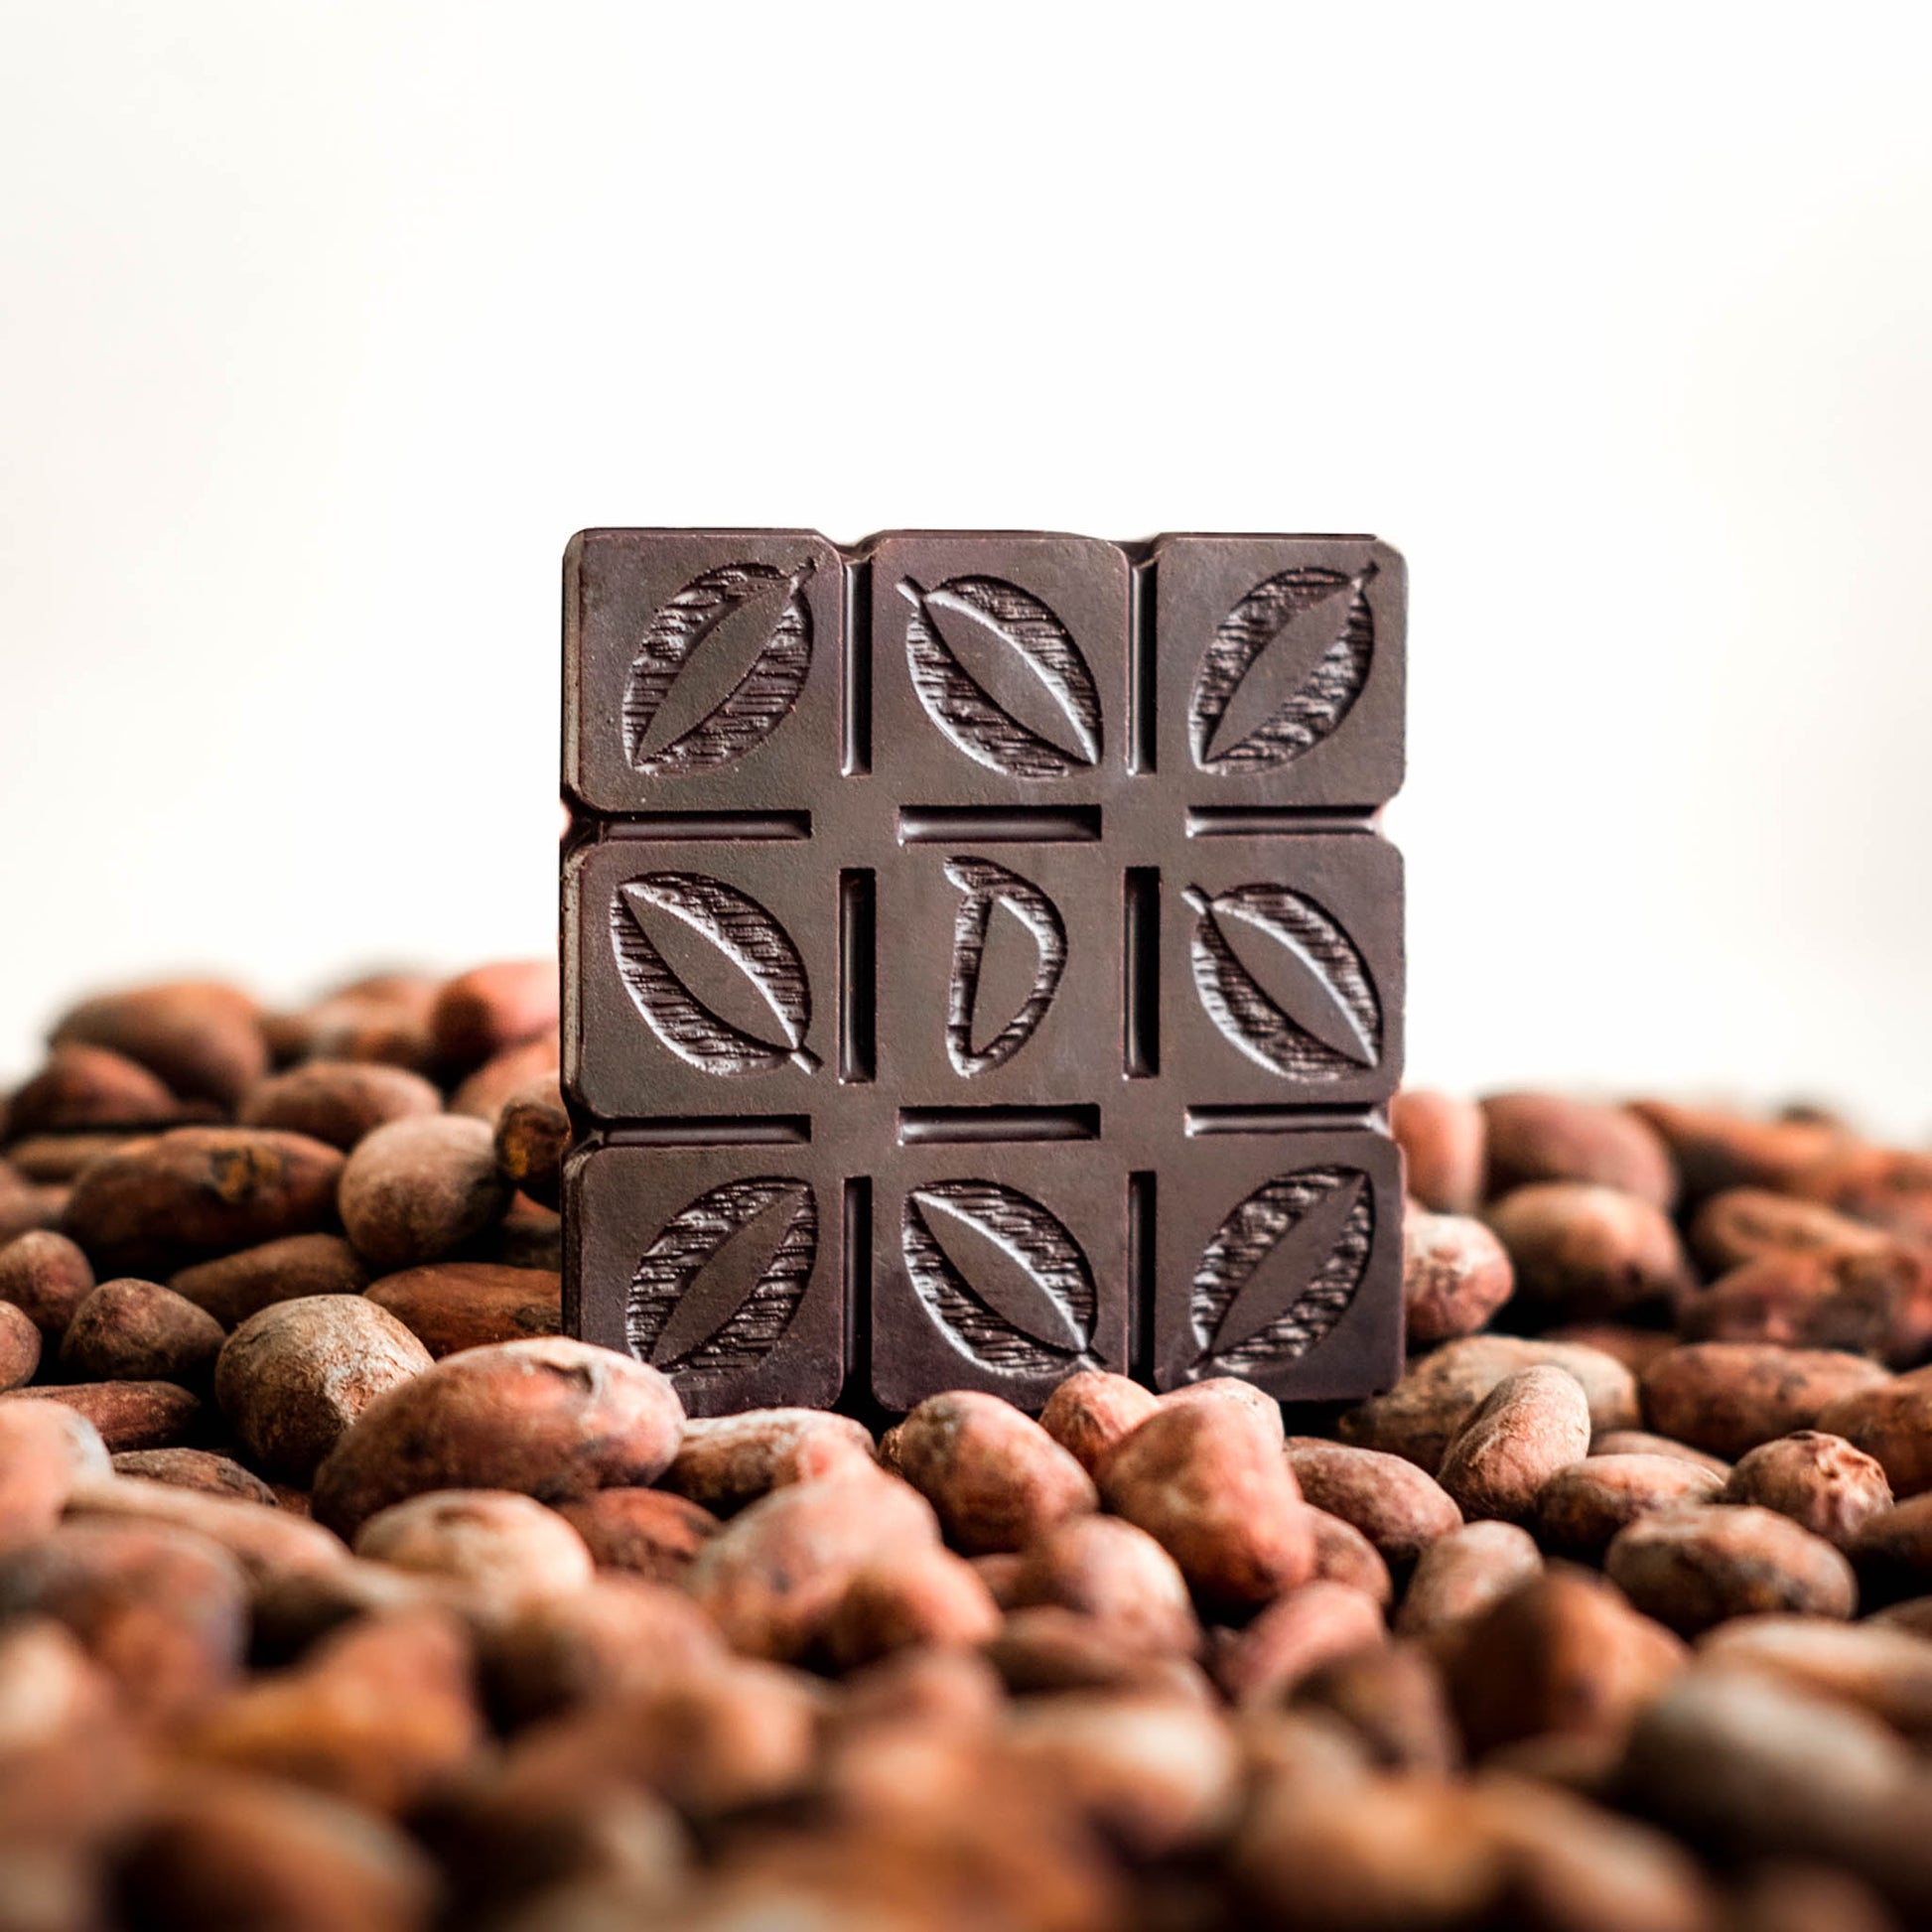 Durca - unique delicious and flavorsome premium dark chocolate 